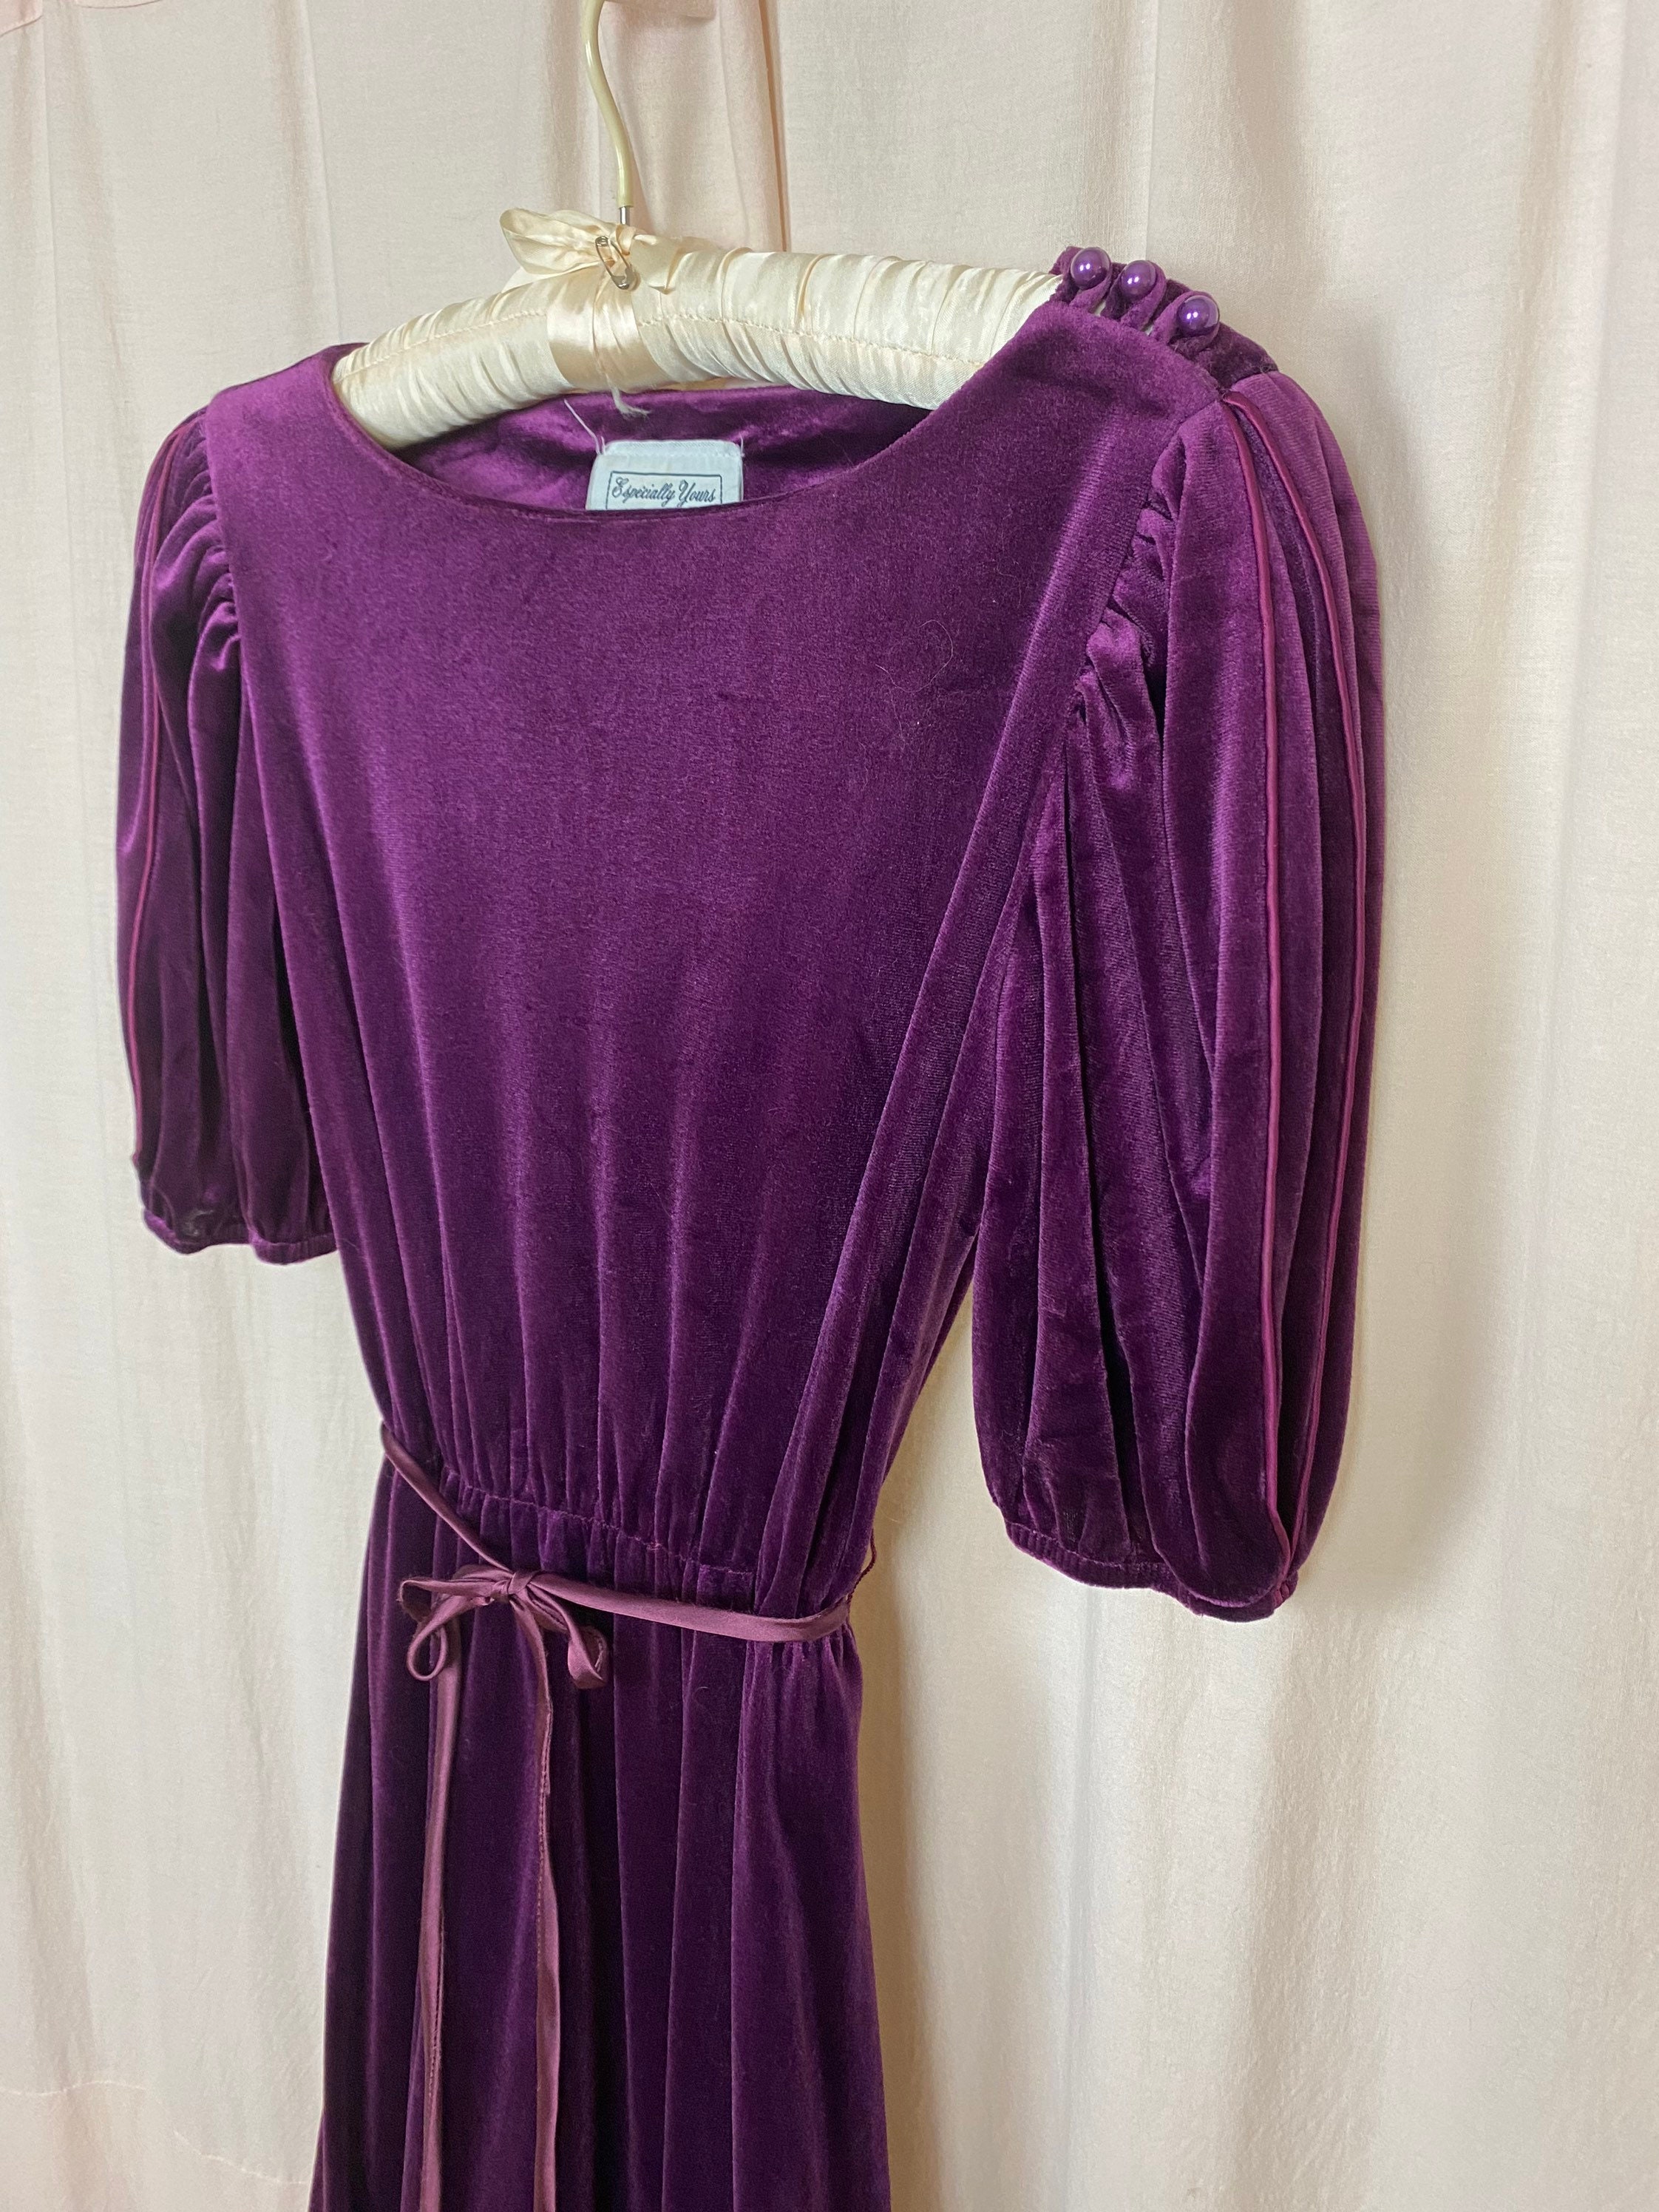 Vintage 70’s/80’s Purple Velour Dress